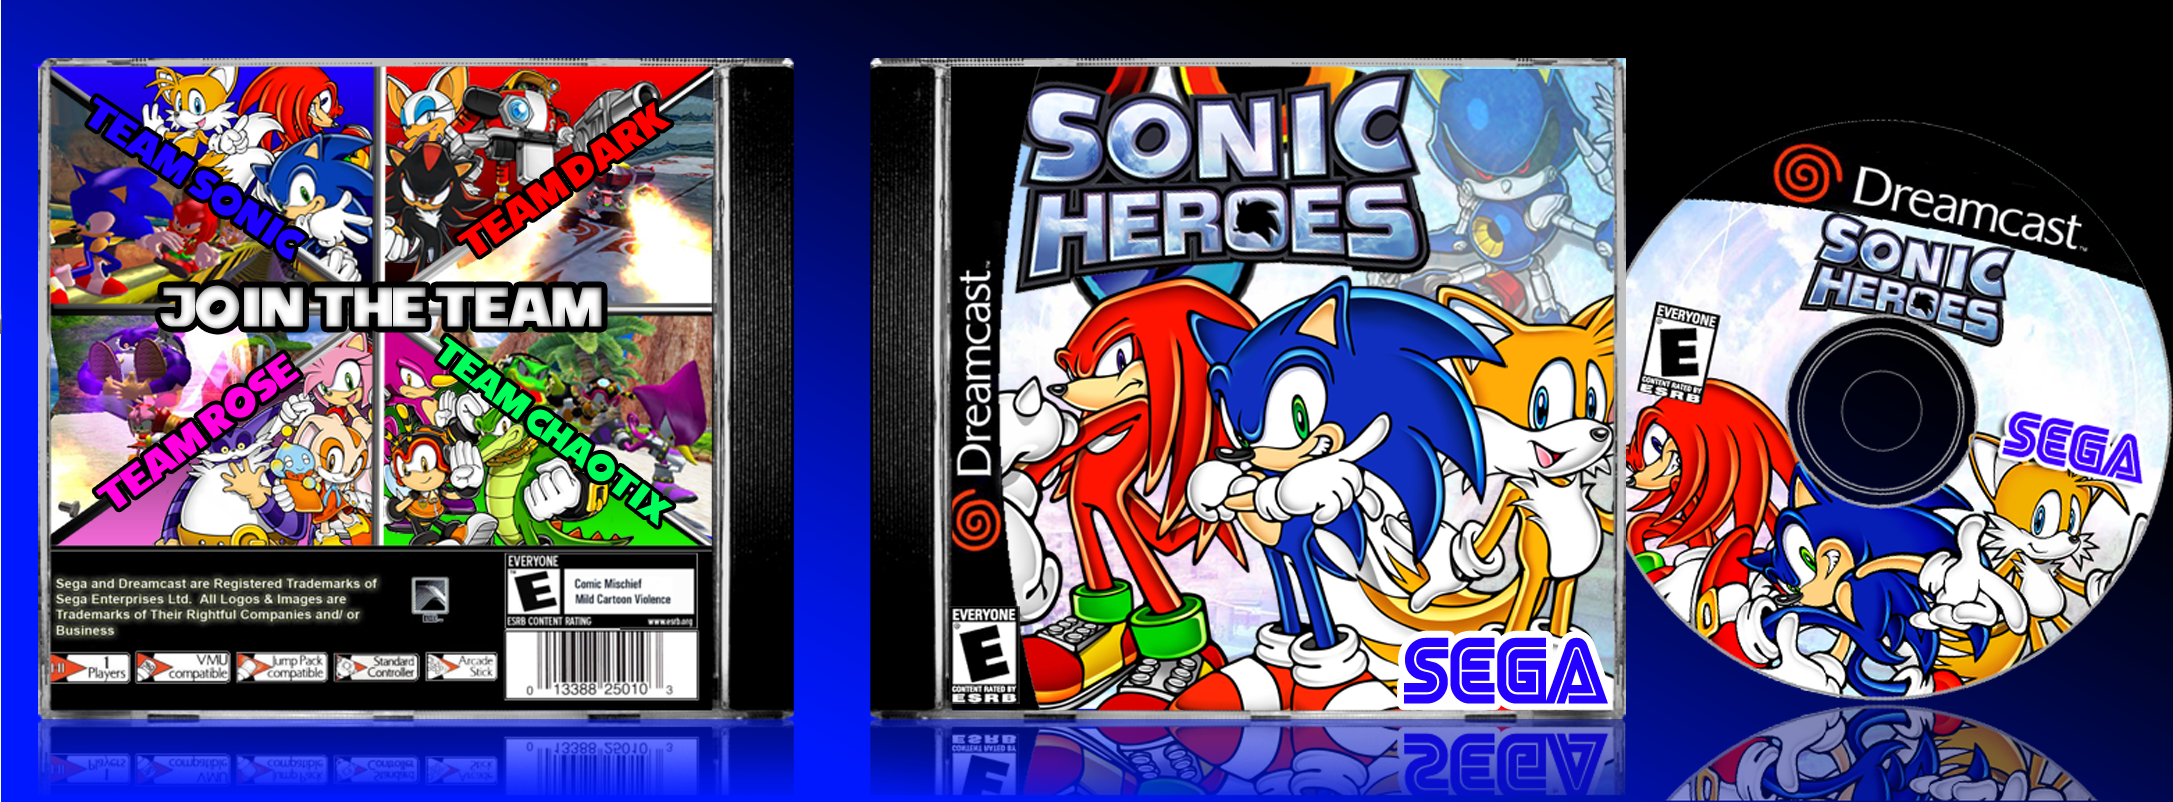 Sonic на dreamcast русский. Sega Dreamcast 2. Sonic Heroes Dreamcast. Игры про Соника на Дримкаст. Сега Дримкаст игры Соника.